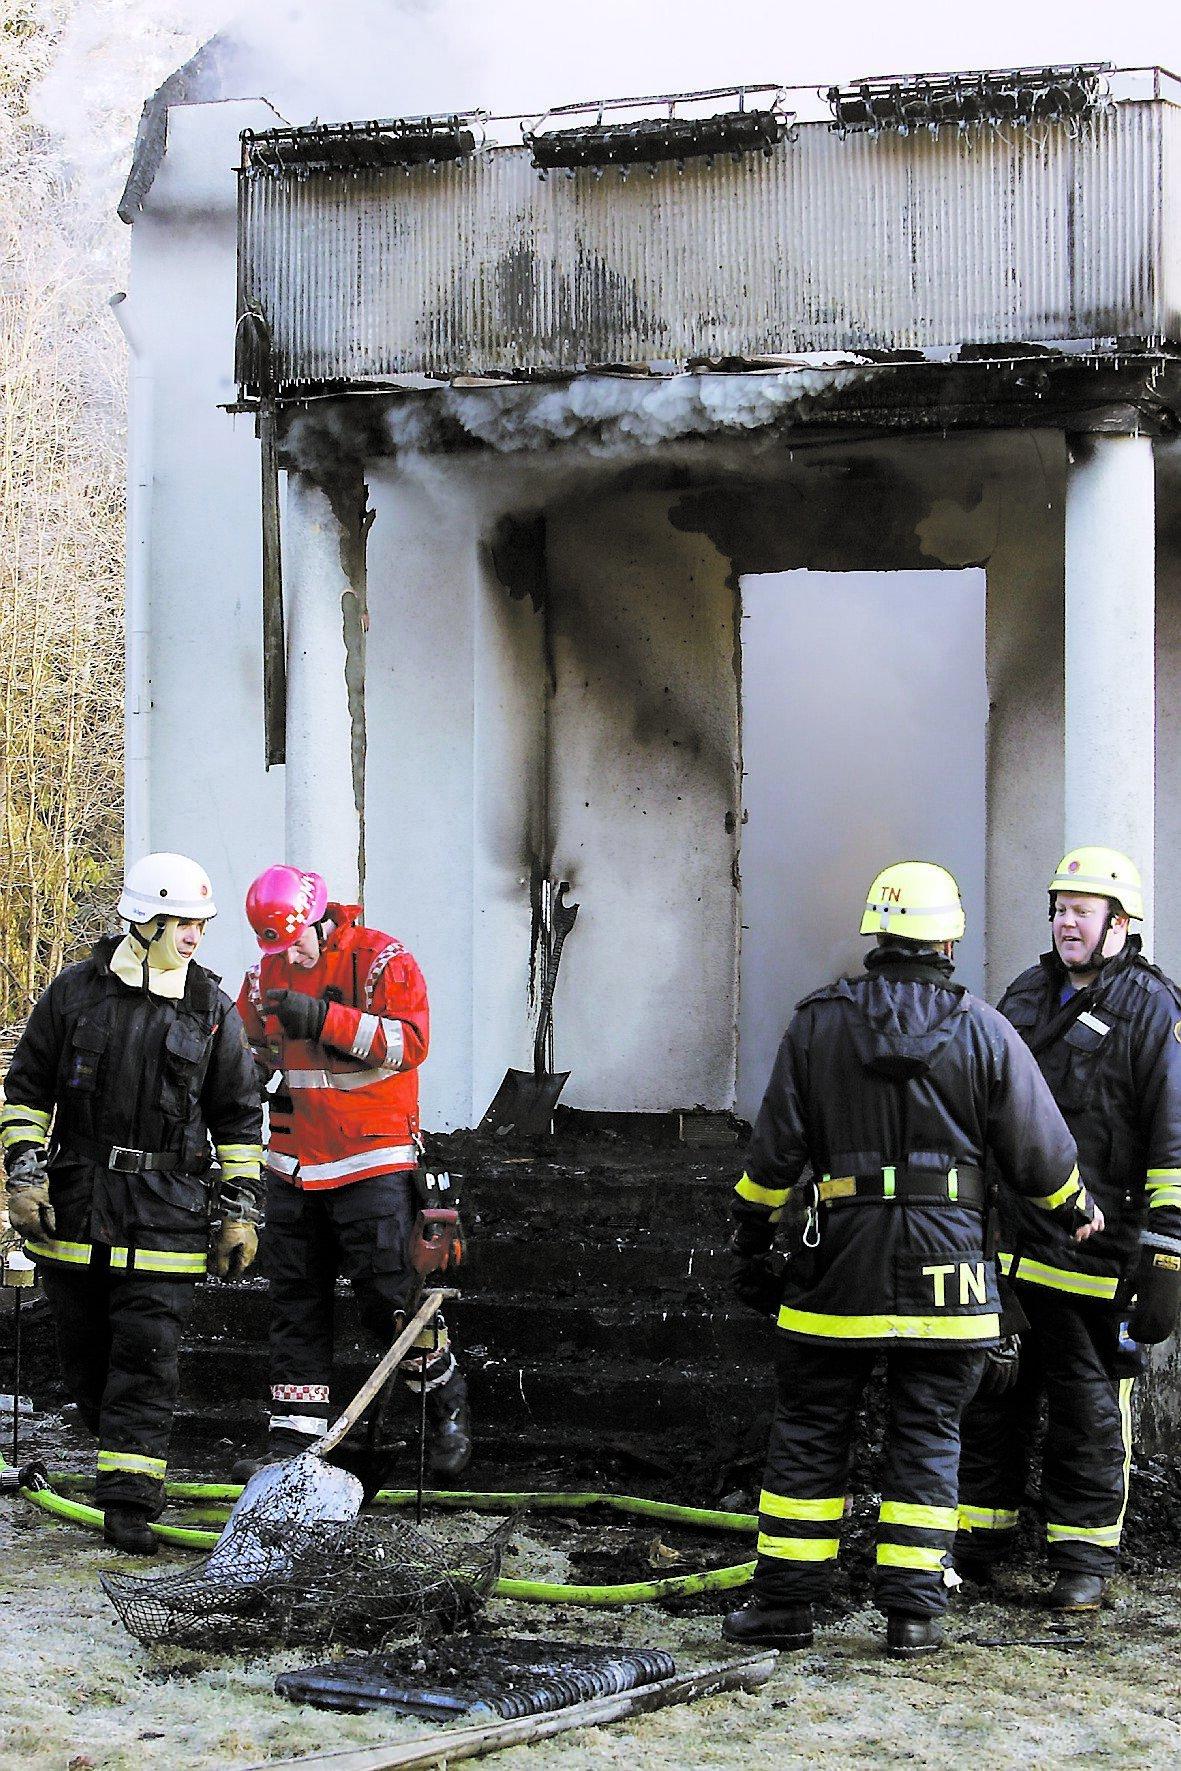 Släckningsarbetet fortsatte under dagen, men villan blev helt utbränd.